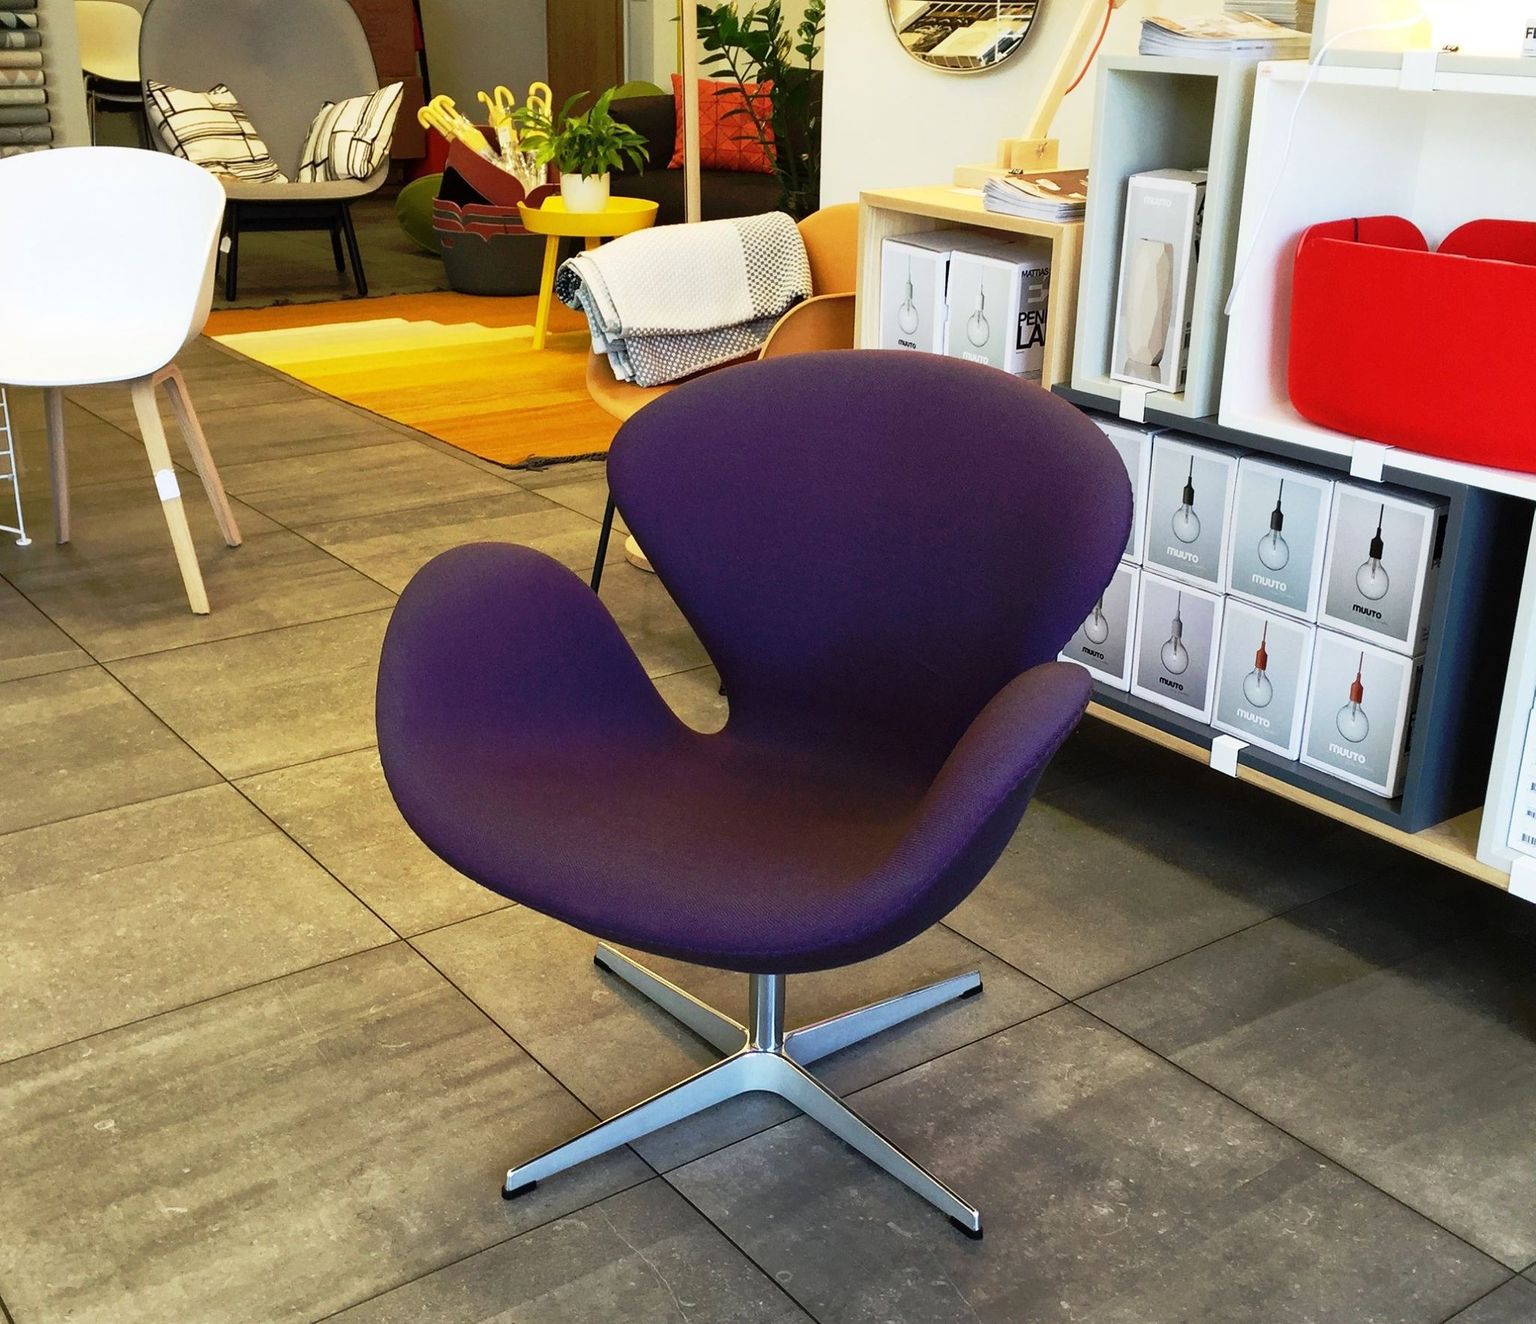 tugitool / armchair «Swan»
disainer / designer Arne Jacobsen